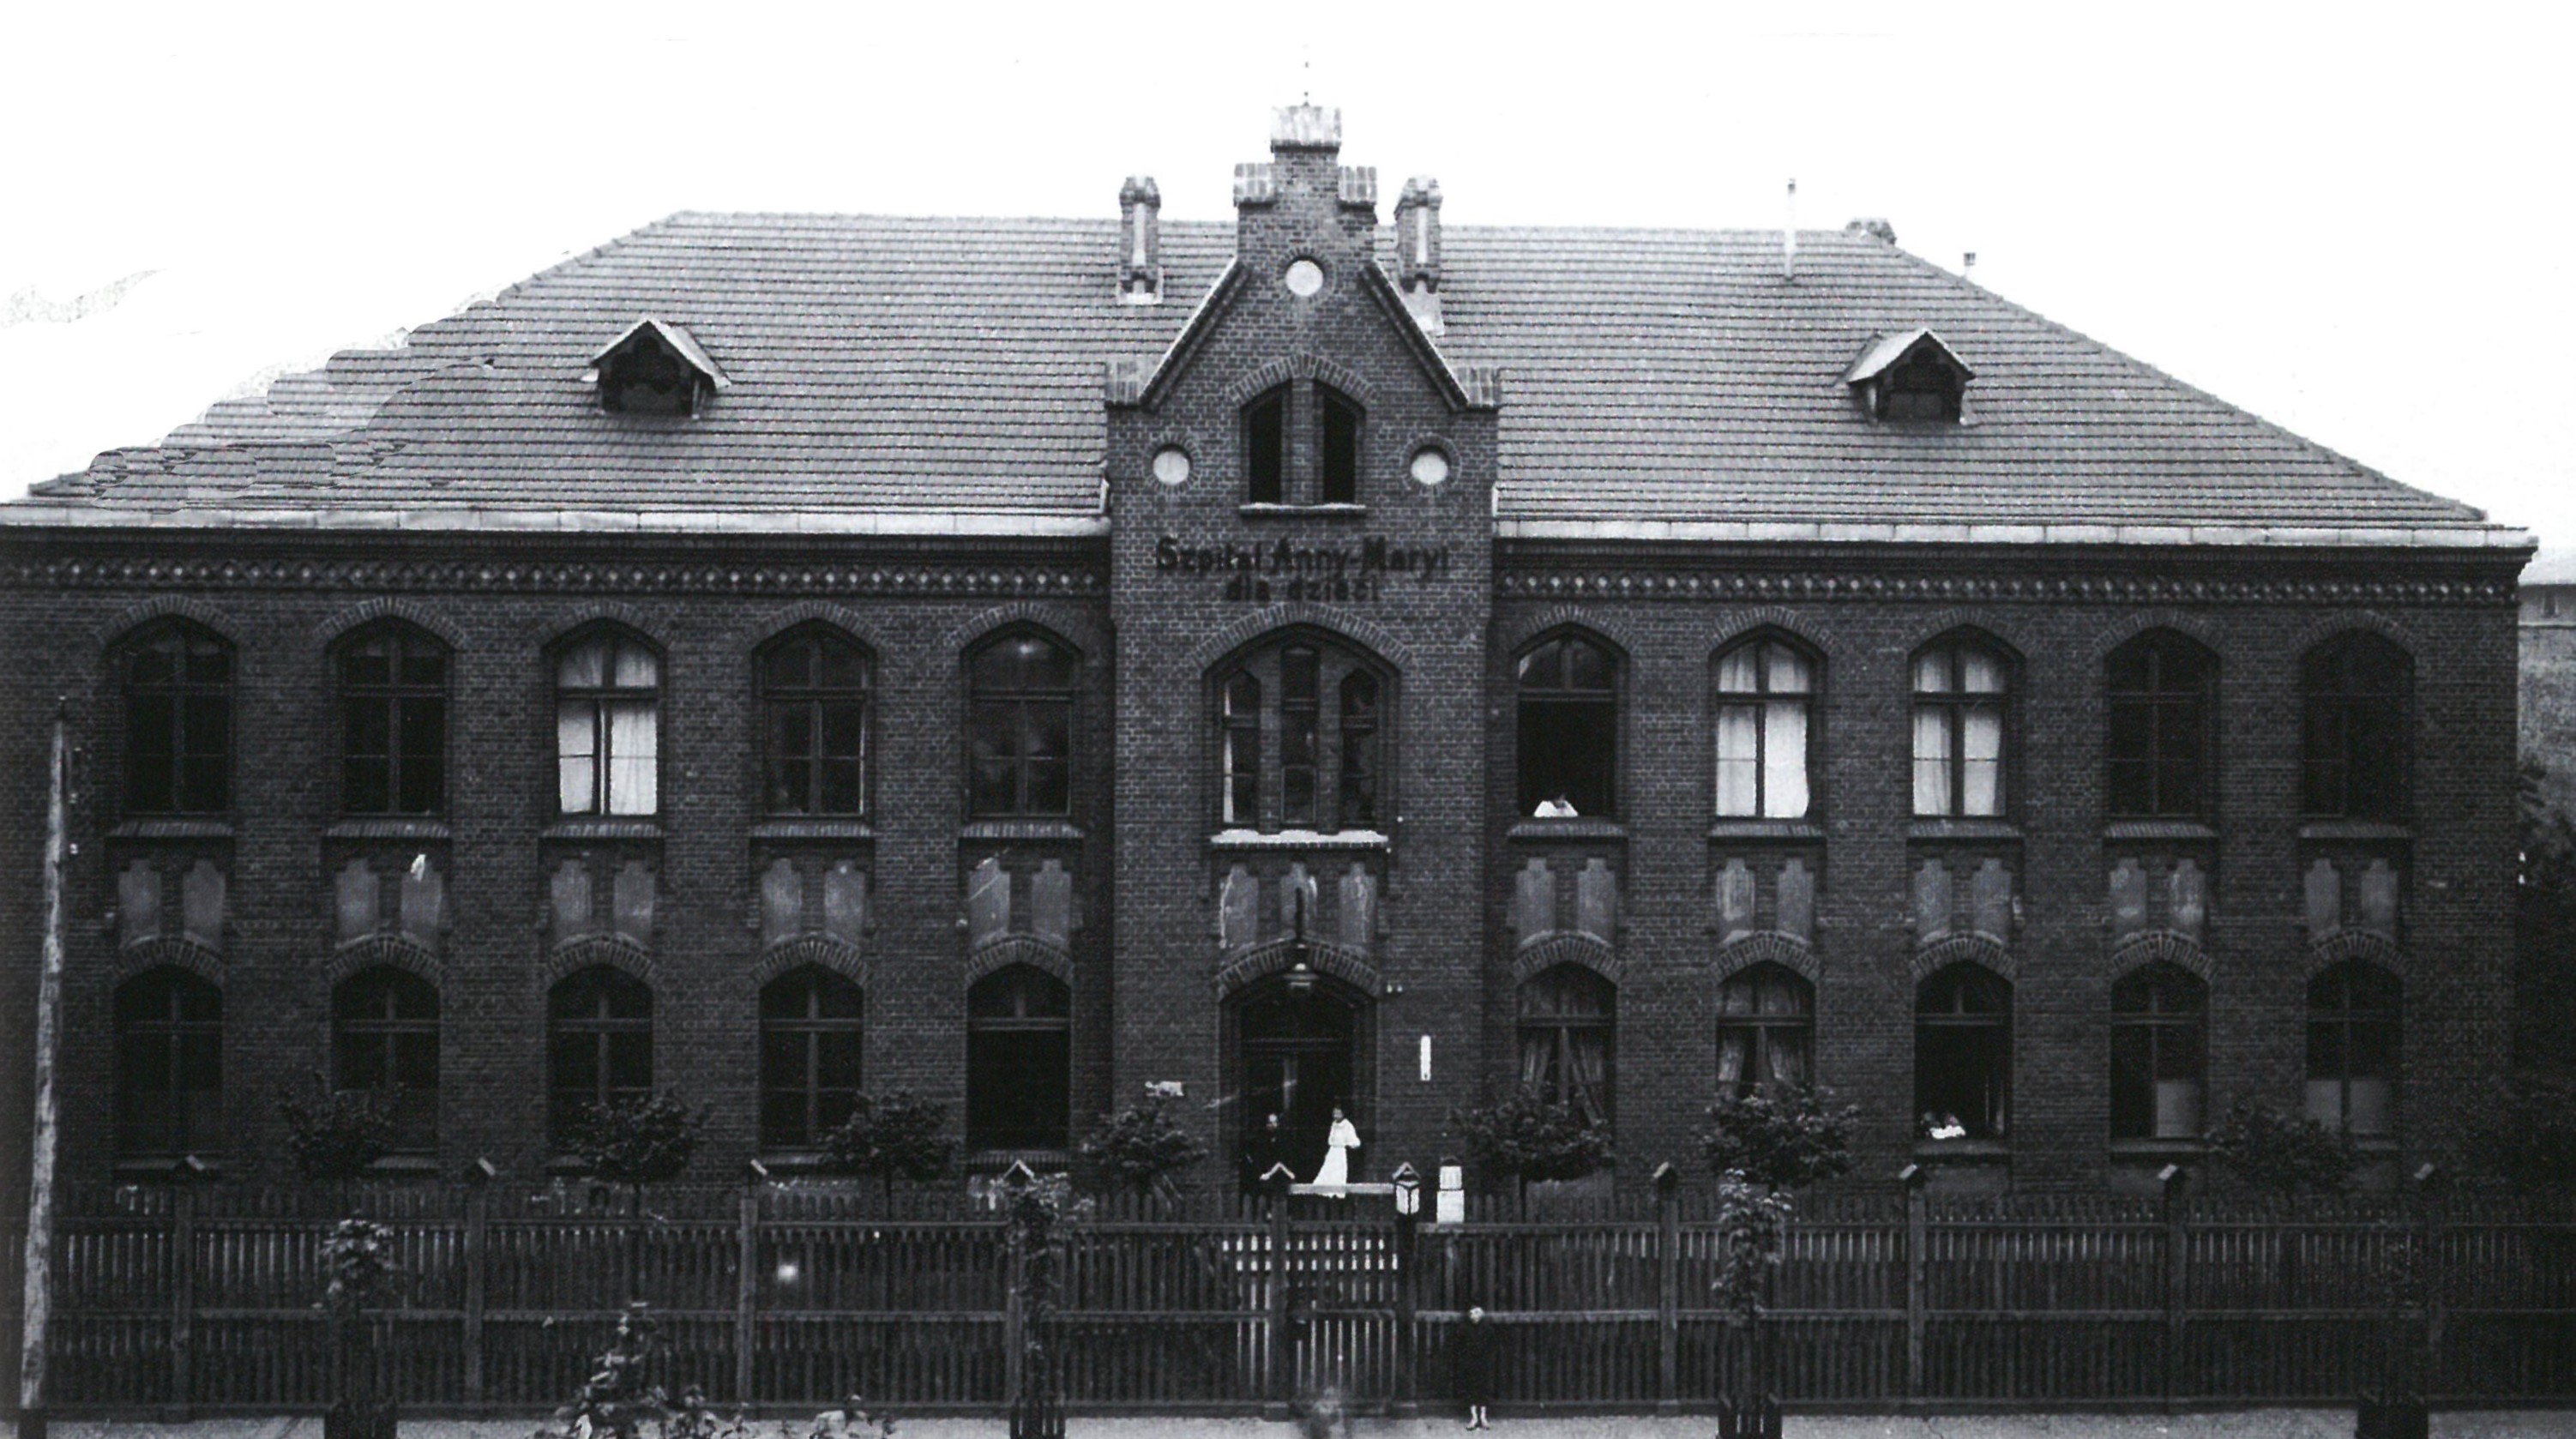 czarno-białe zdjęcie przedstawia piętrowy budynek ze spadzistym dachem